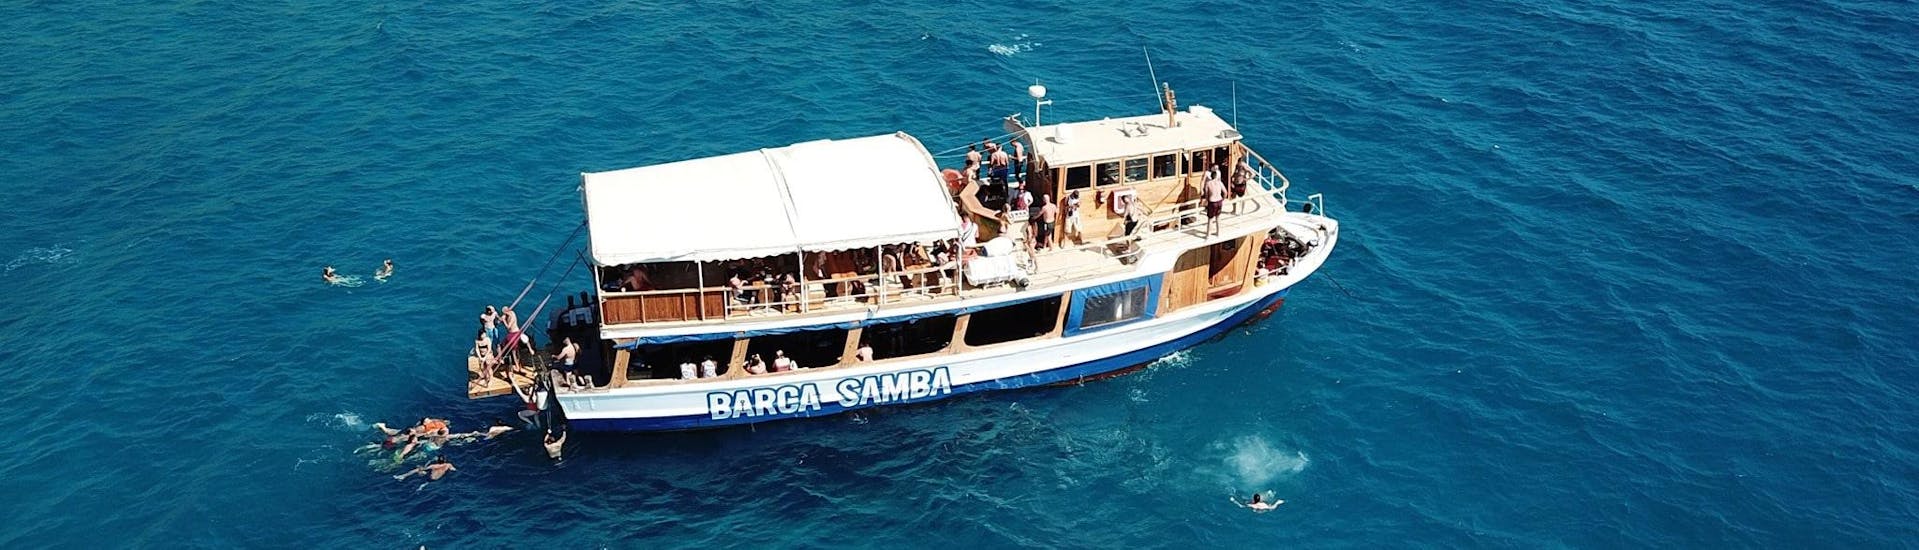 Un barco pasea por Palma de Mallorca con Barca Samba.